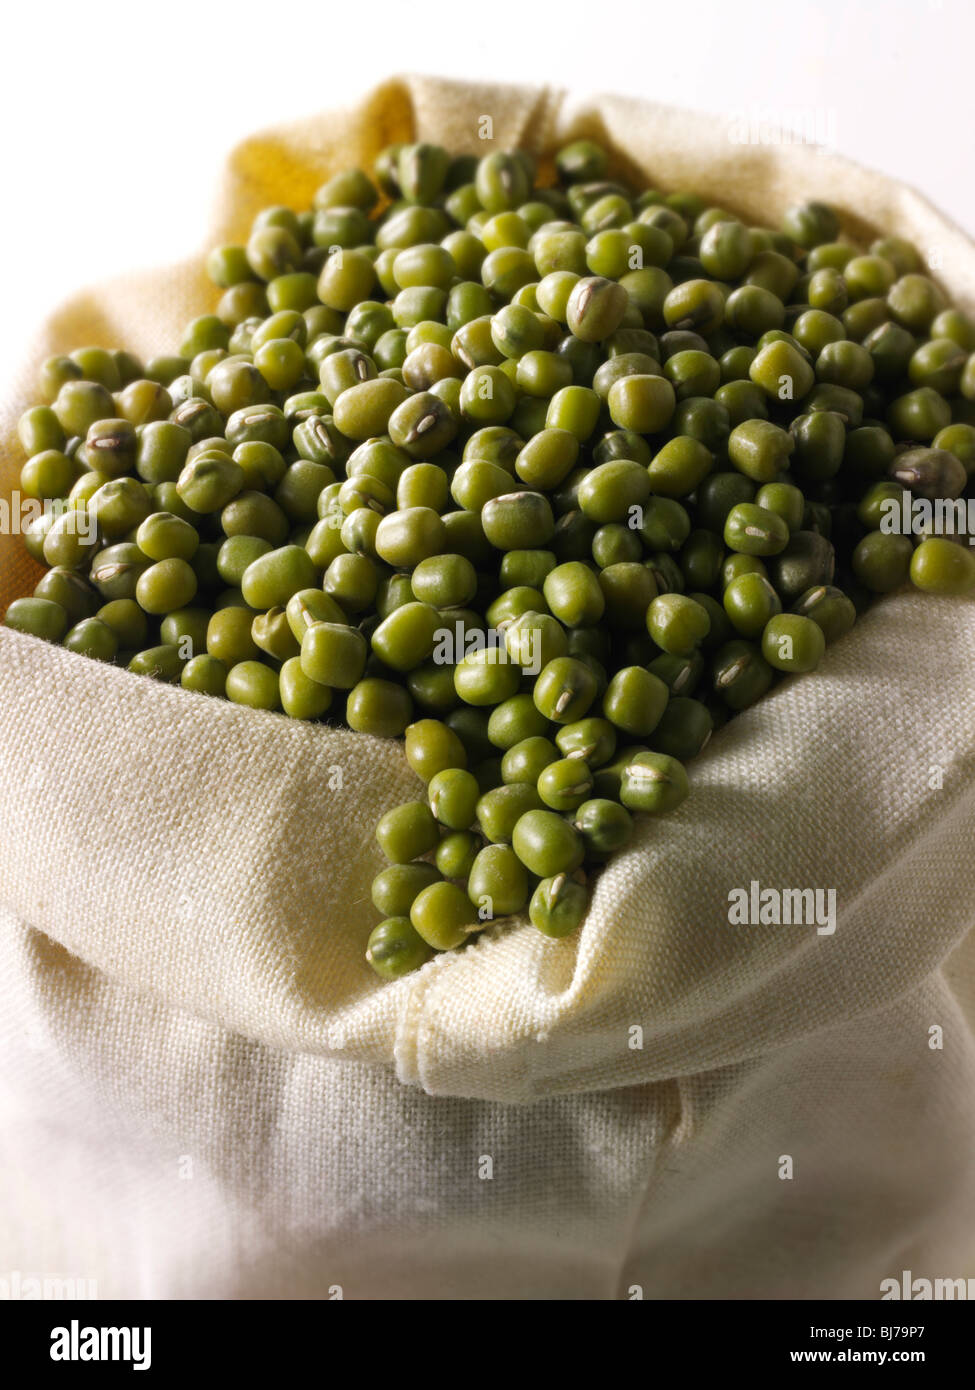 Fagioli interi, o grammo verde, maash, moong - primo piano pieno in una borsa di tela (Vigna radiata) Foto Stock